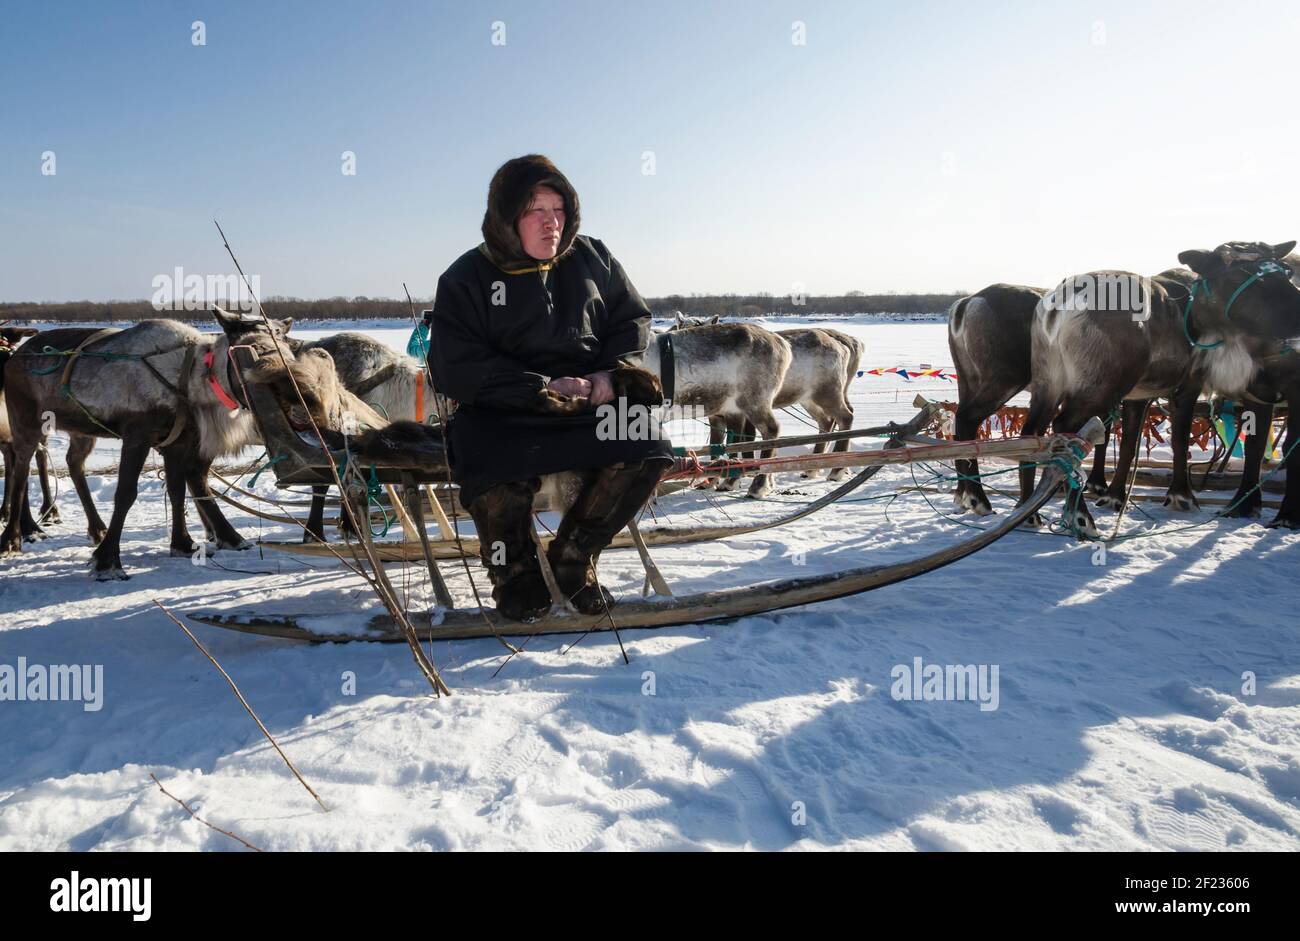 Marzo 2021 - Golubino. Una mandria di renna in abito nazionale si siede su una slitta. Russia, regione di Arkhangelsk Foto Stock